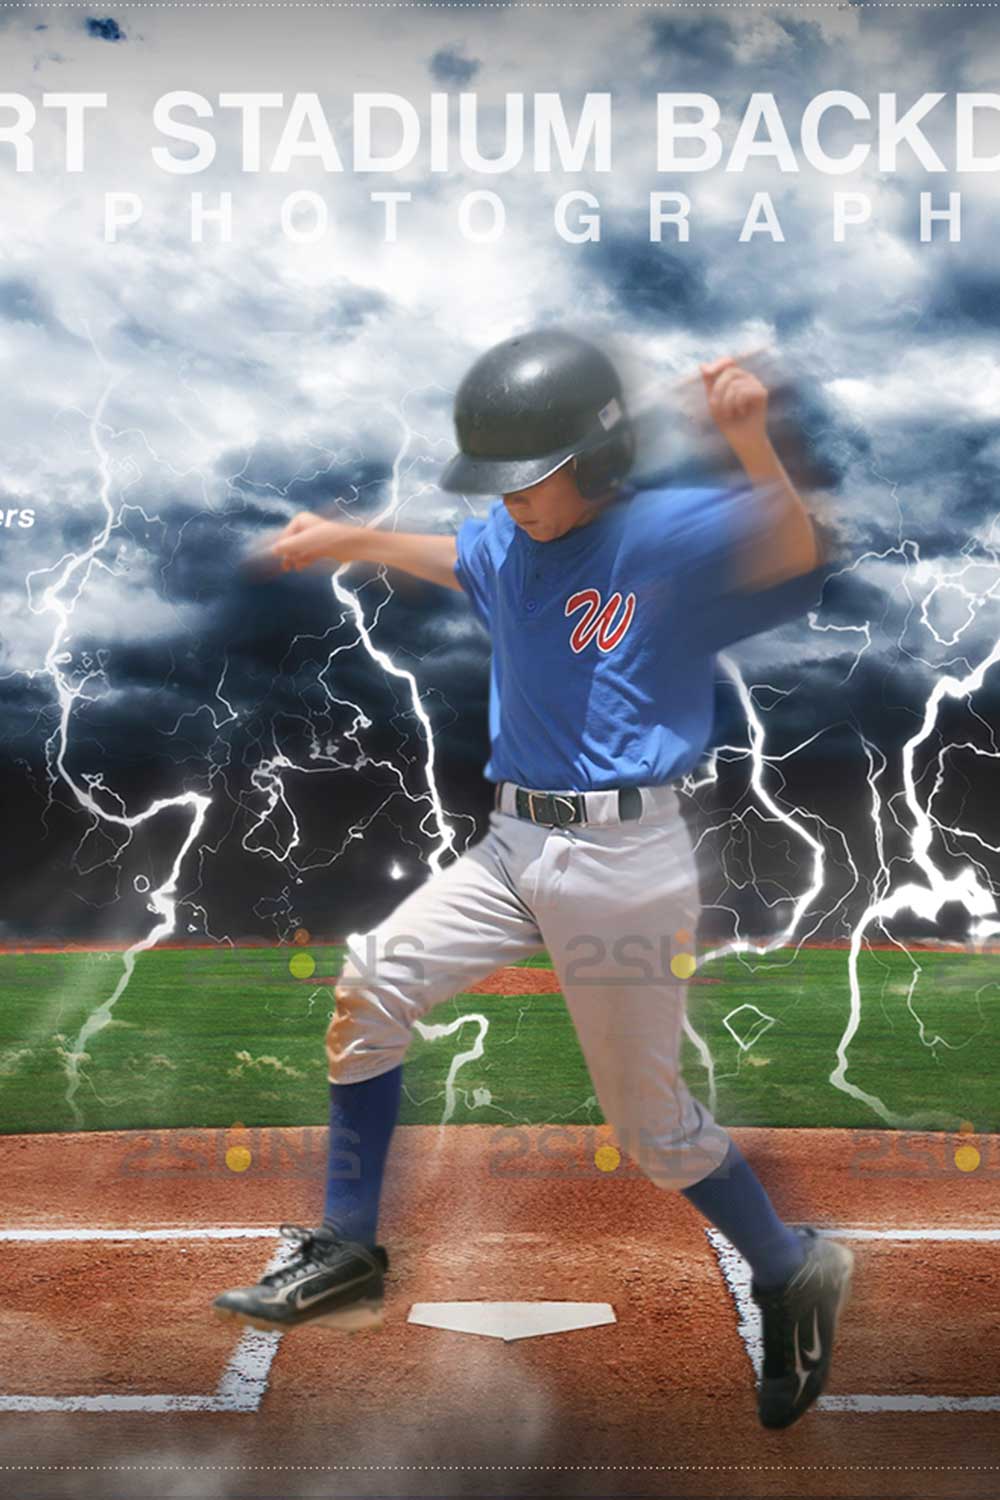 Stylish Baseball Backdrop Sports Digital Photoshop Overlay Pinterest Image.